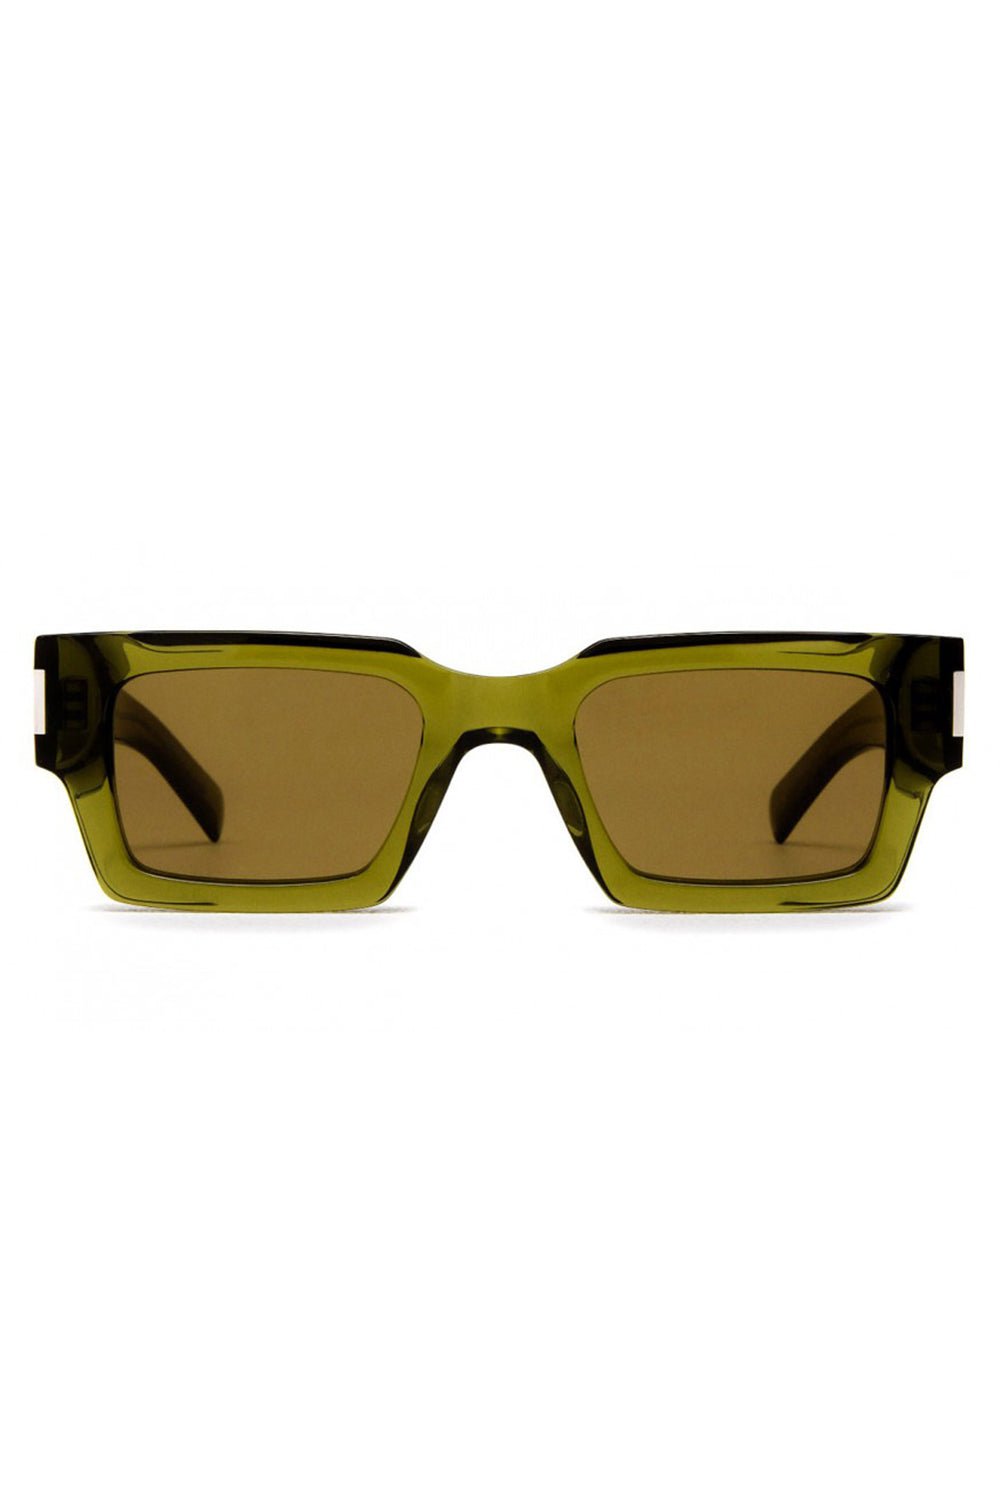 SAINT LAURENT-Rectangular Sunglasses - Green-GREEN/GREEN/BROWN